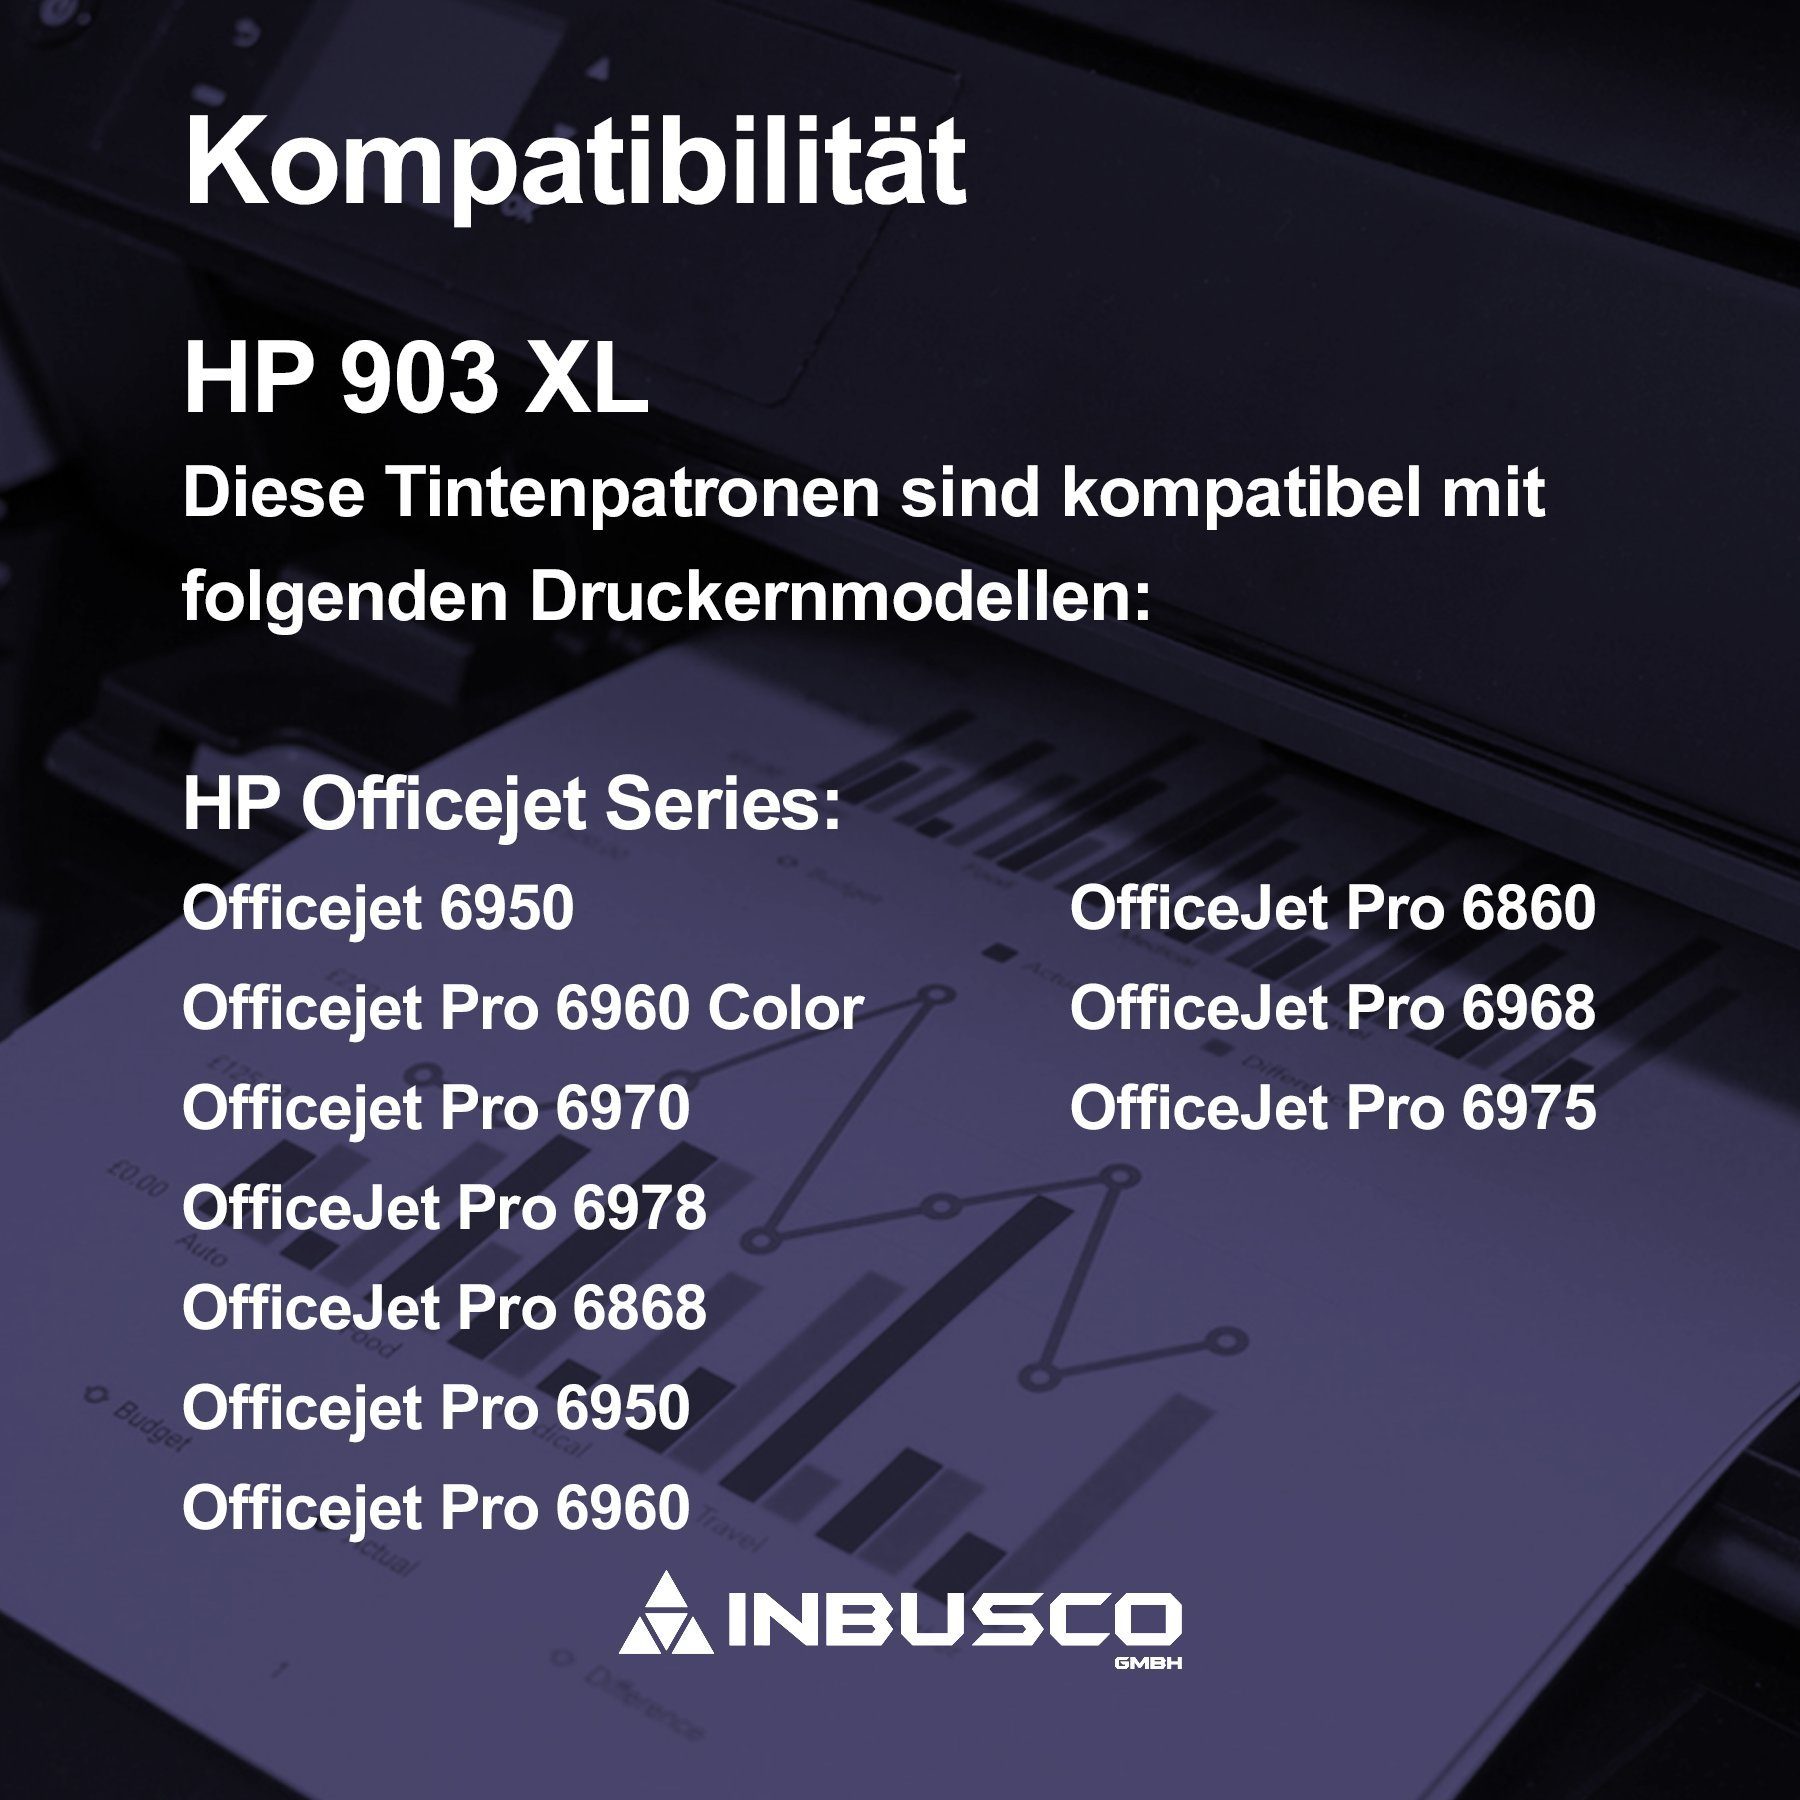 Inbusco Tonerpatrone ..., XL 903 für 903 Ersatz als T 903 Tintenpatronen XL Kompatibel HP XL HP HP SET 5x